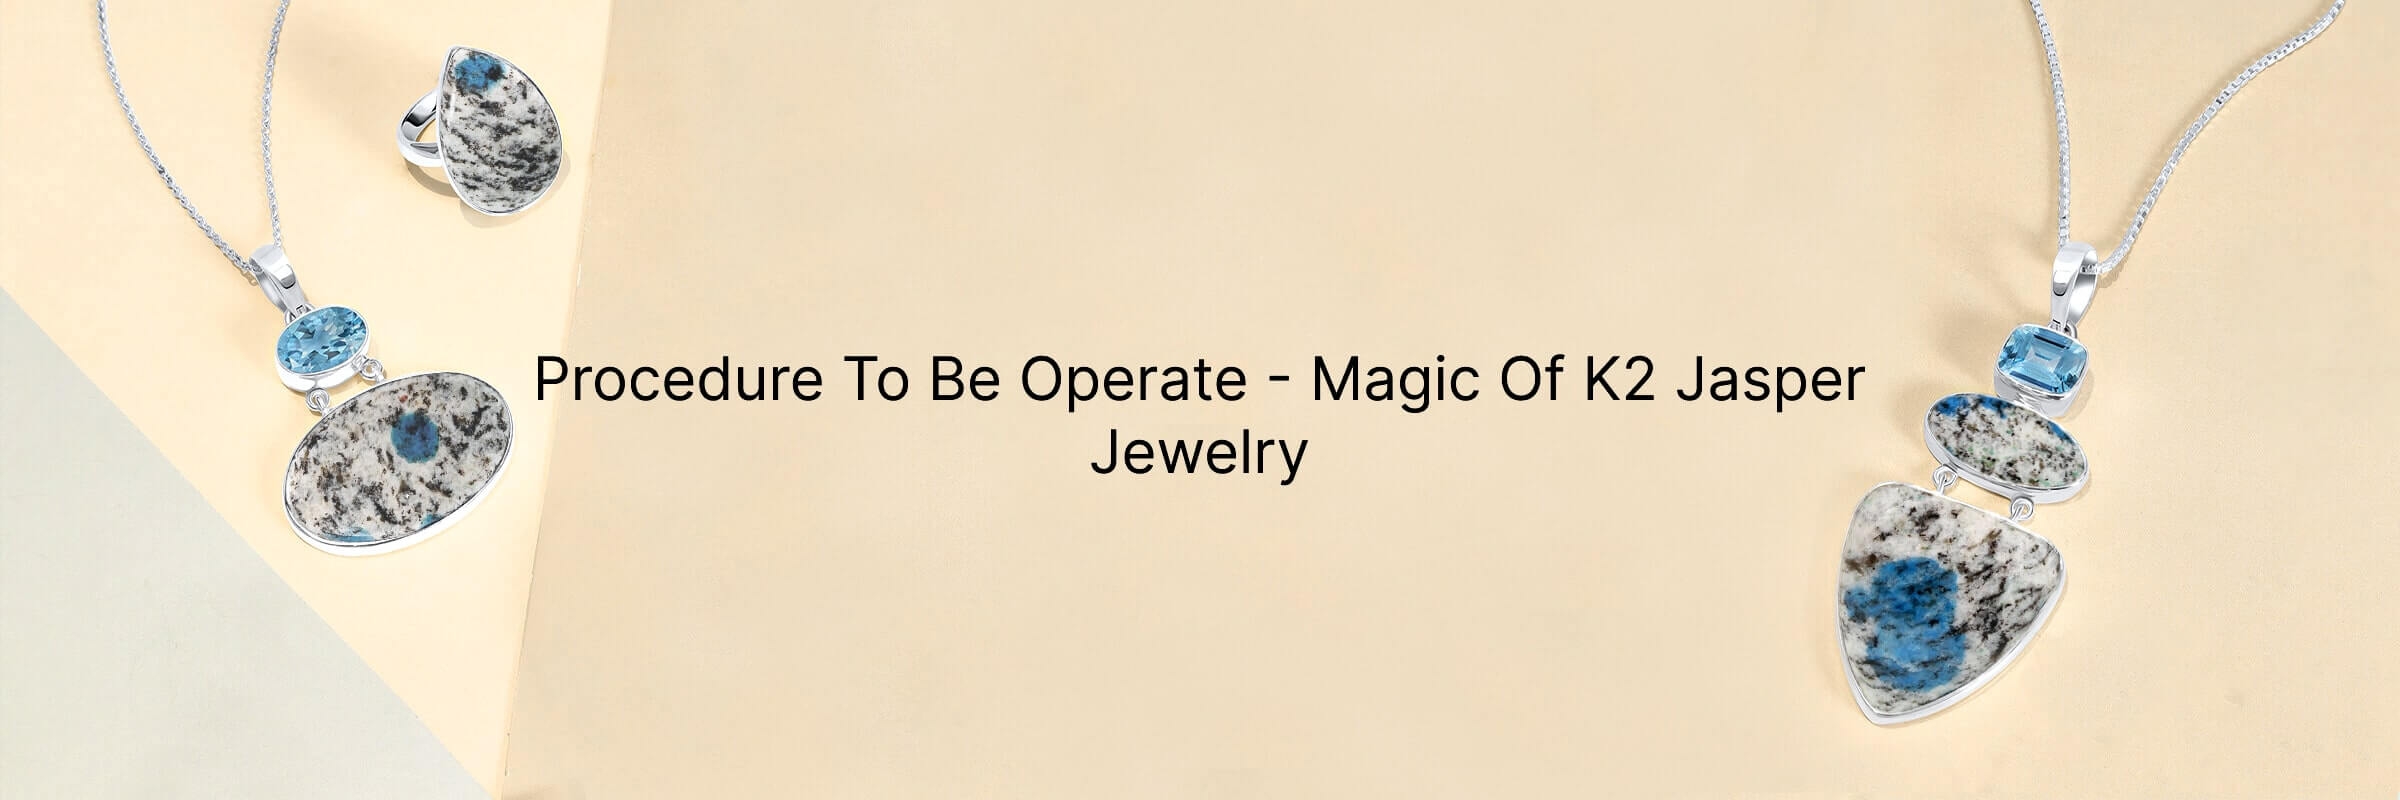 How to Use K2 Jasper Jewelry